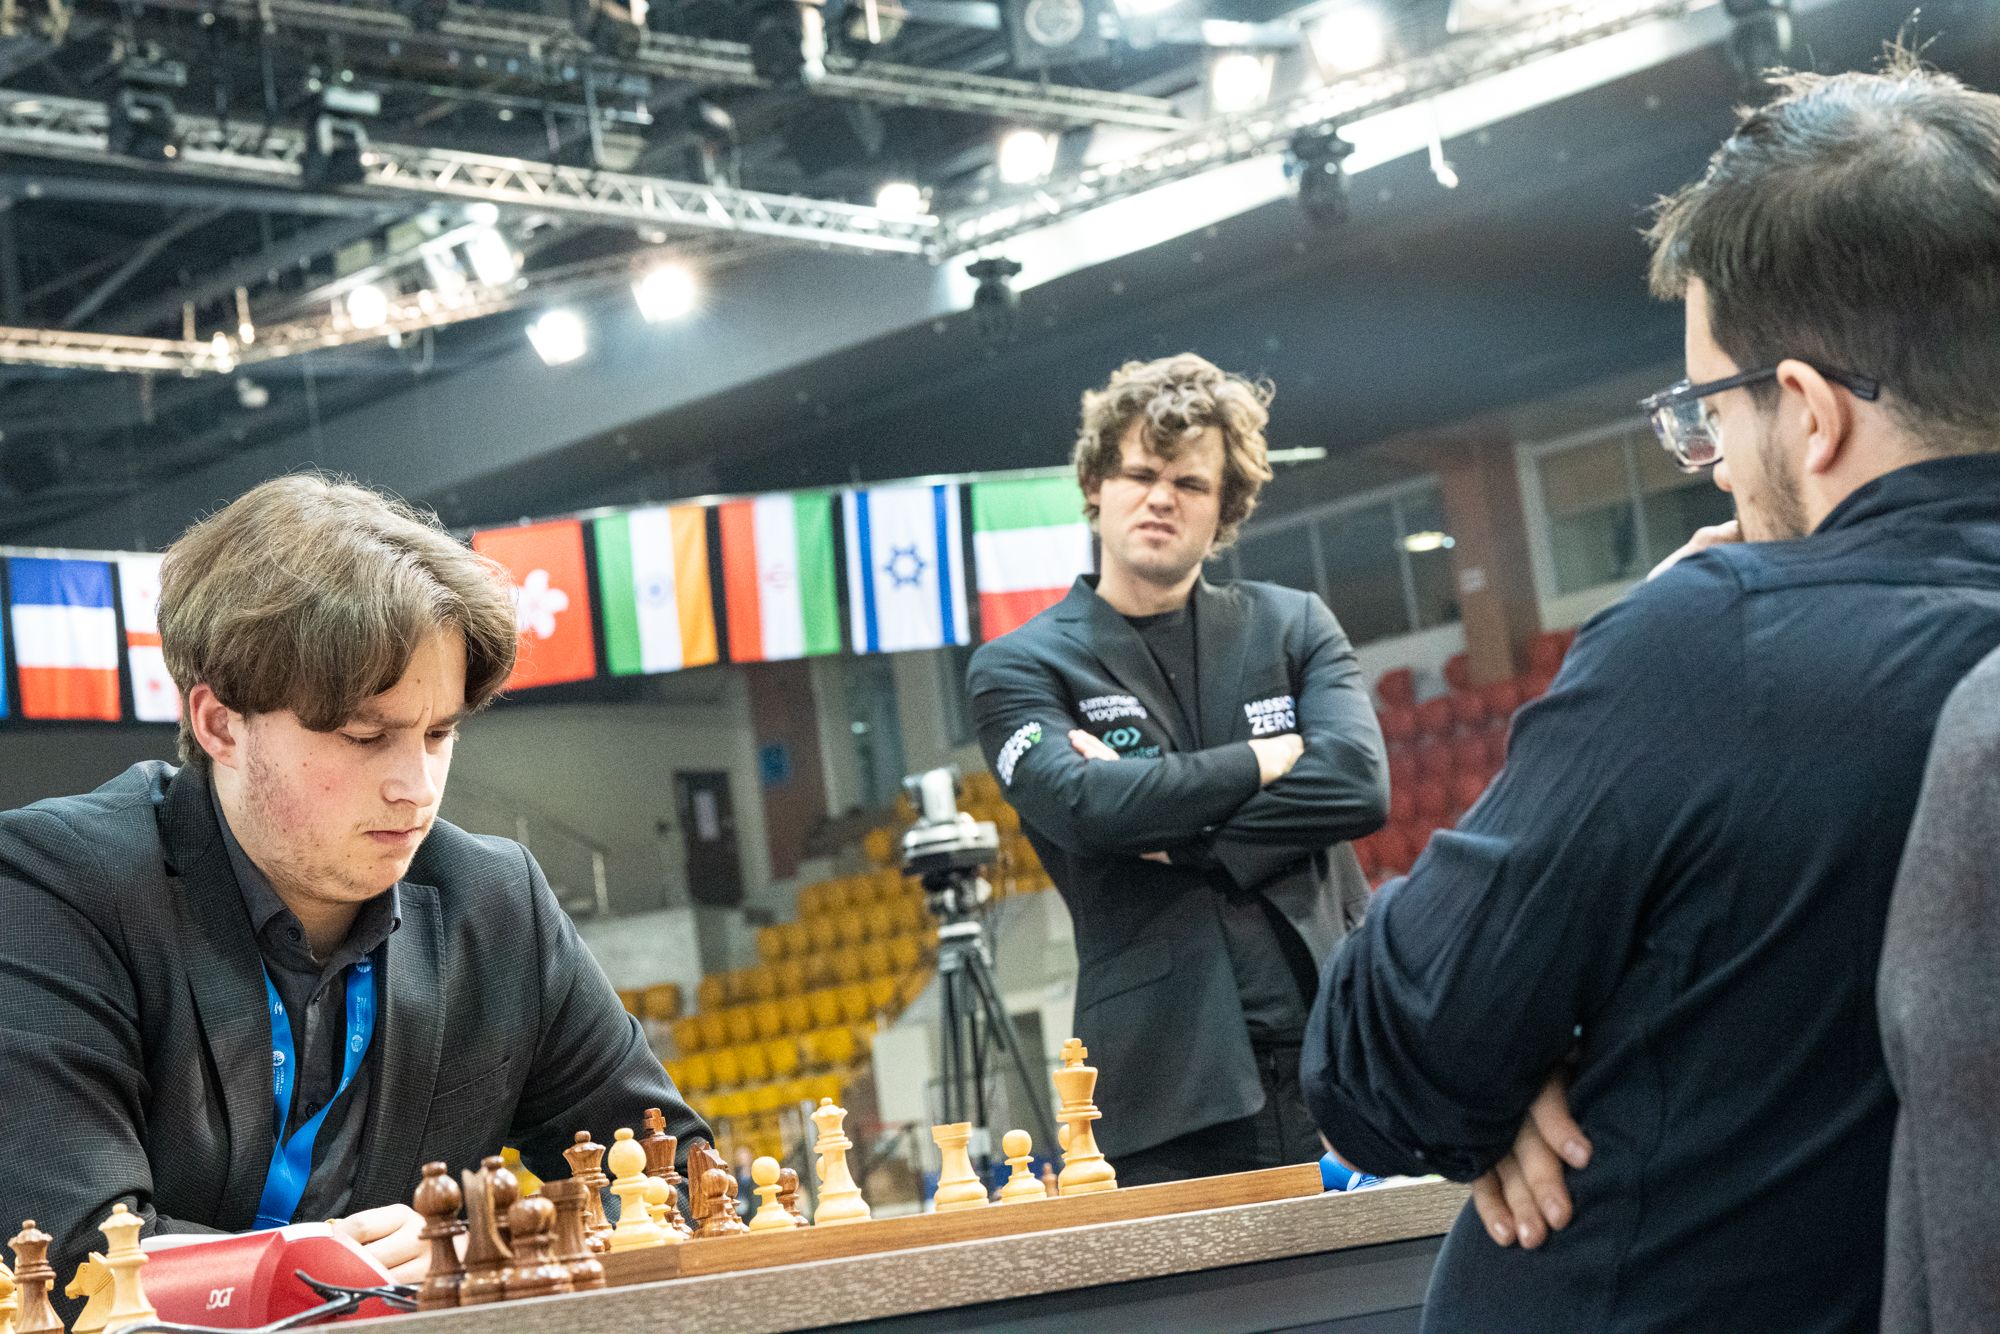 Carlsen vence o 4º Campeonato Mundial de Rápido e Tan é coroada no feminino  